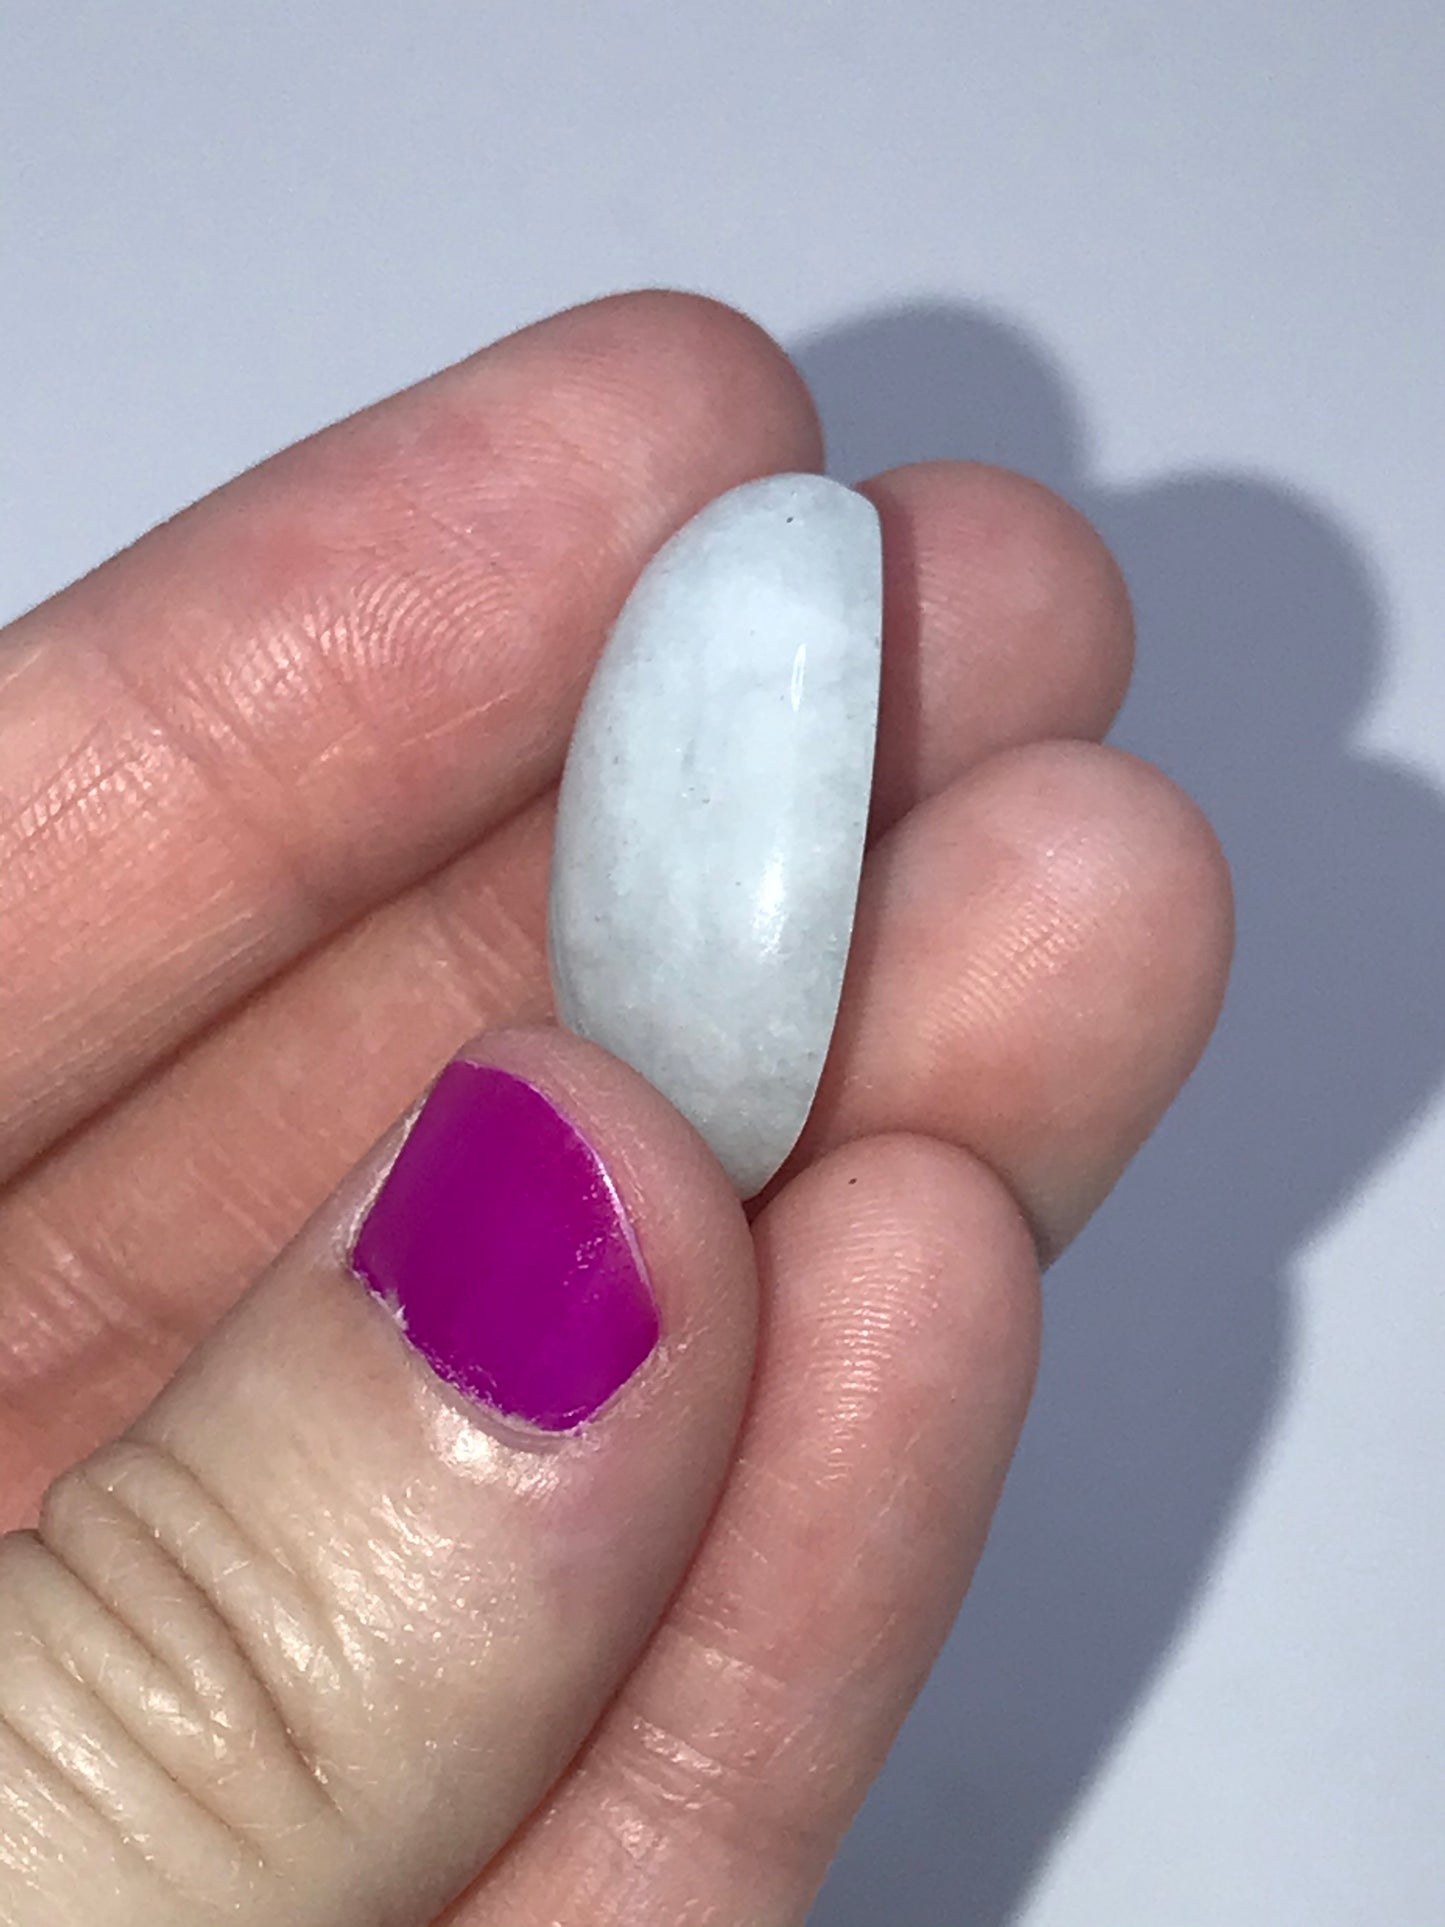 Natural Aquamarine gemstone